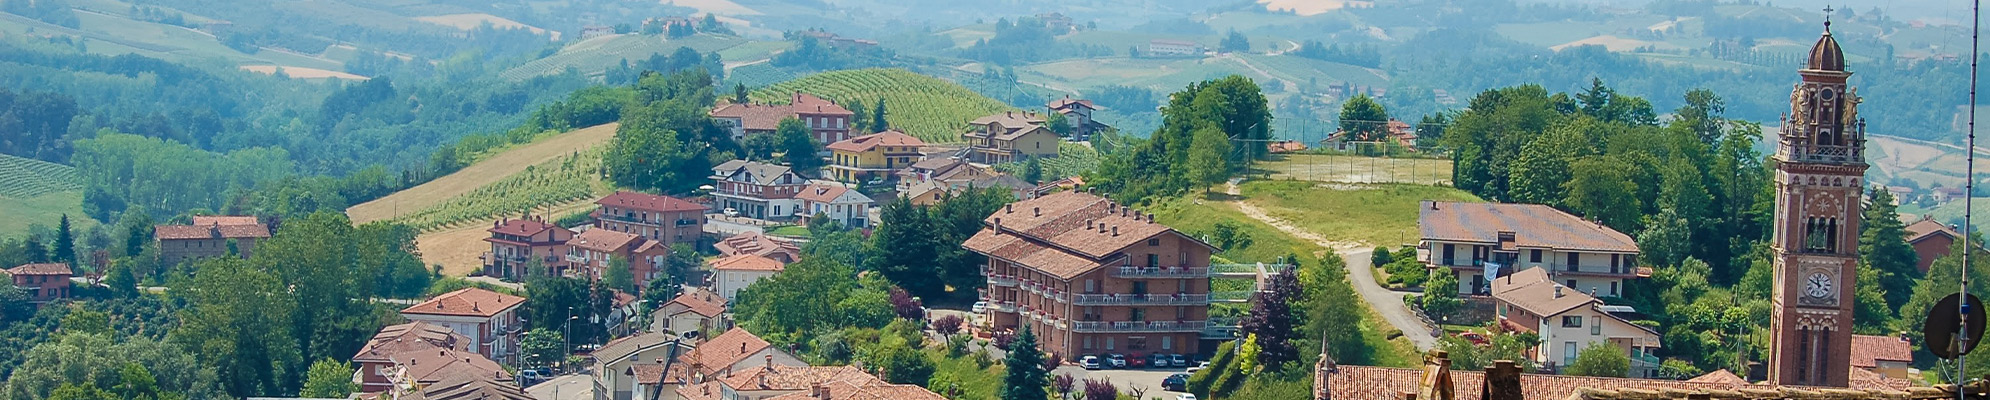 Villaggio ai piedi delle Alpi nella regione Piemonte